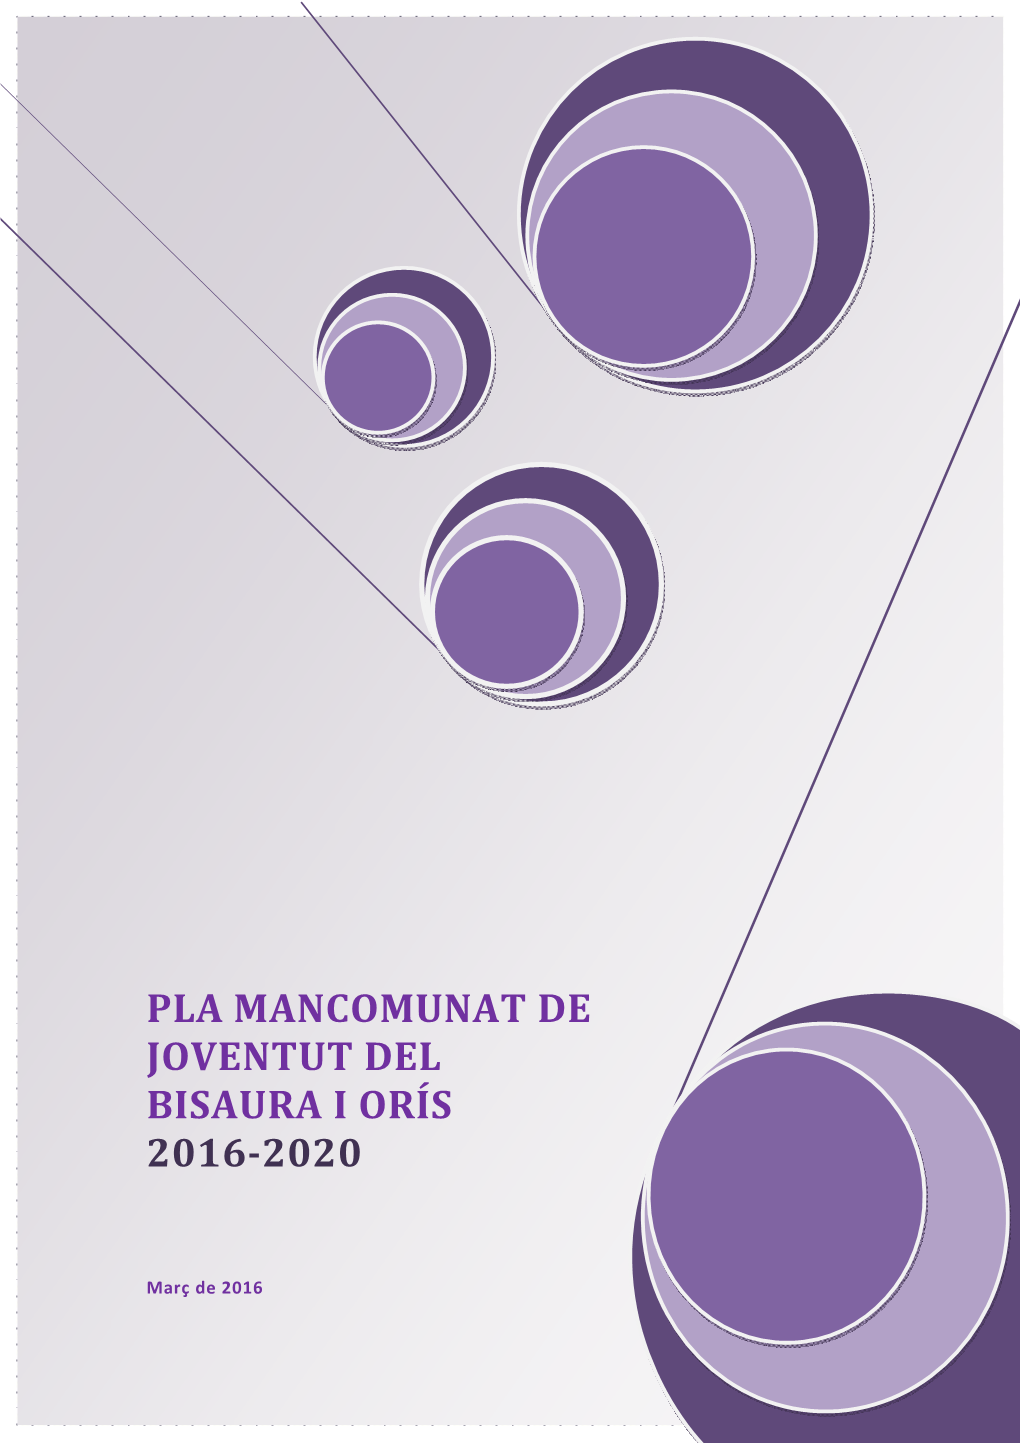 Pla Mancomunat De Joventut Del Bisaura I Orís 2016-2020